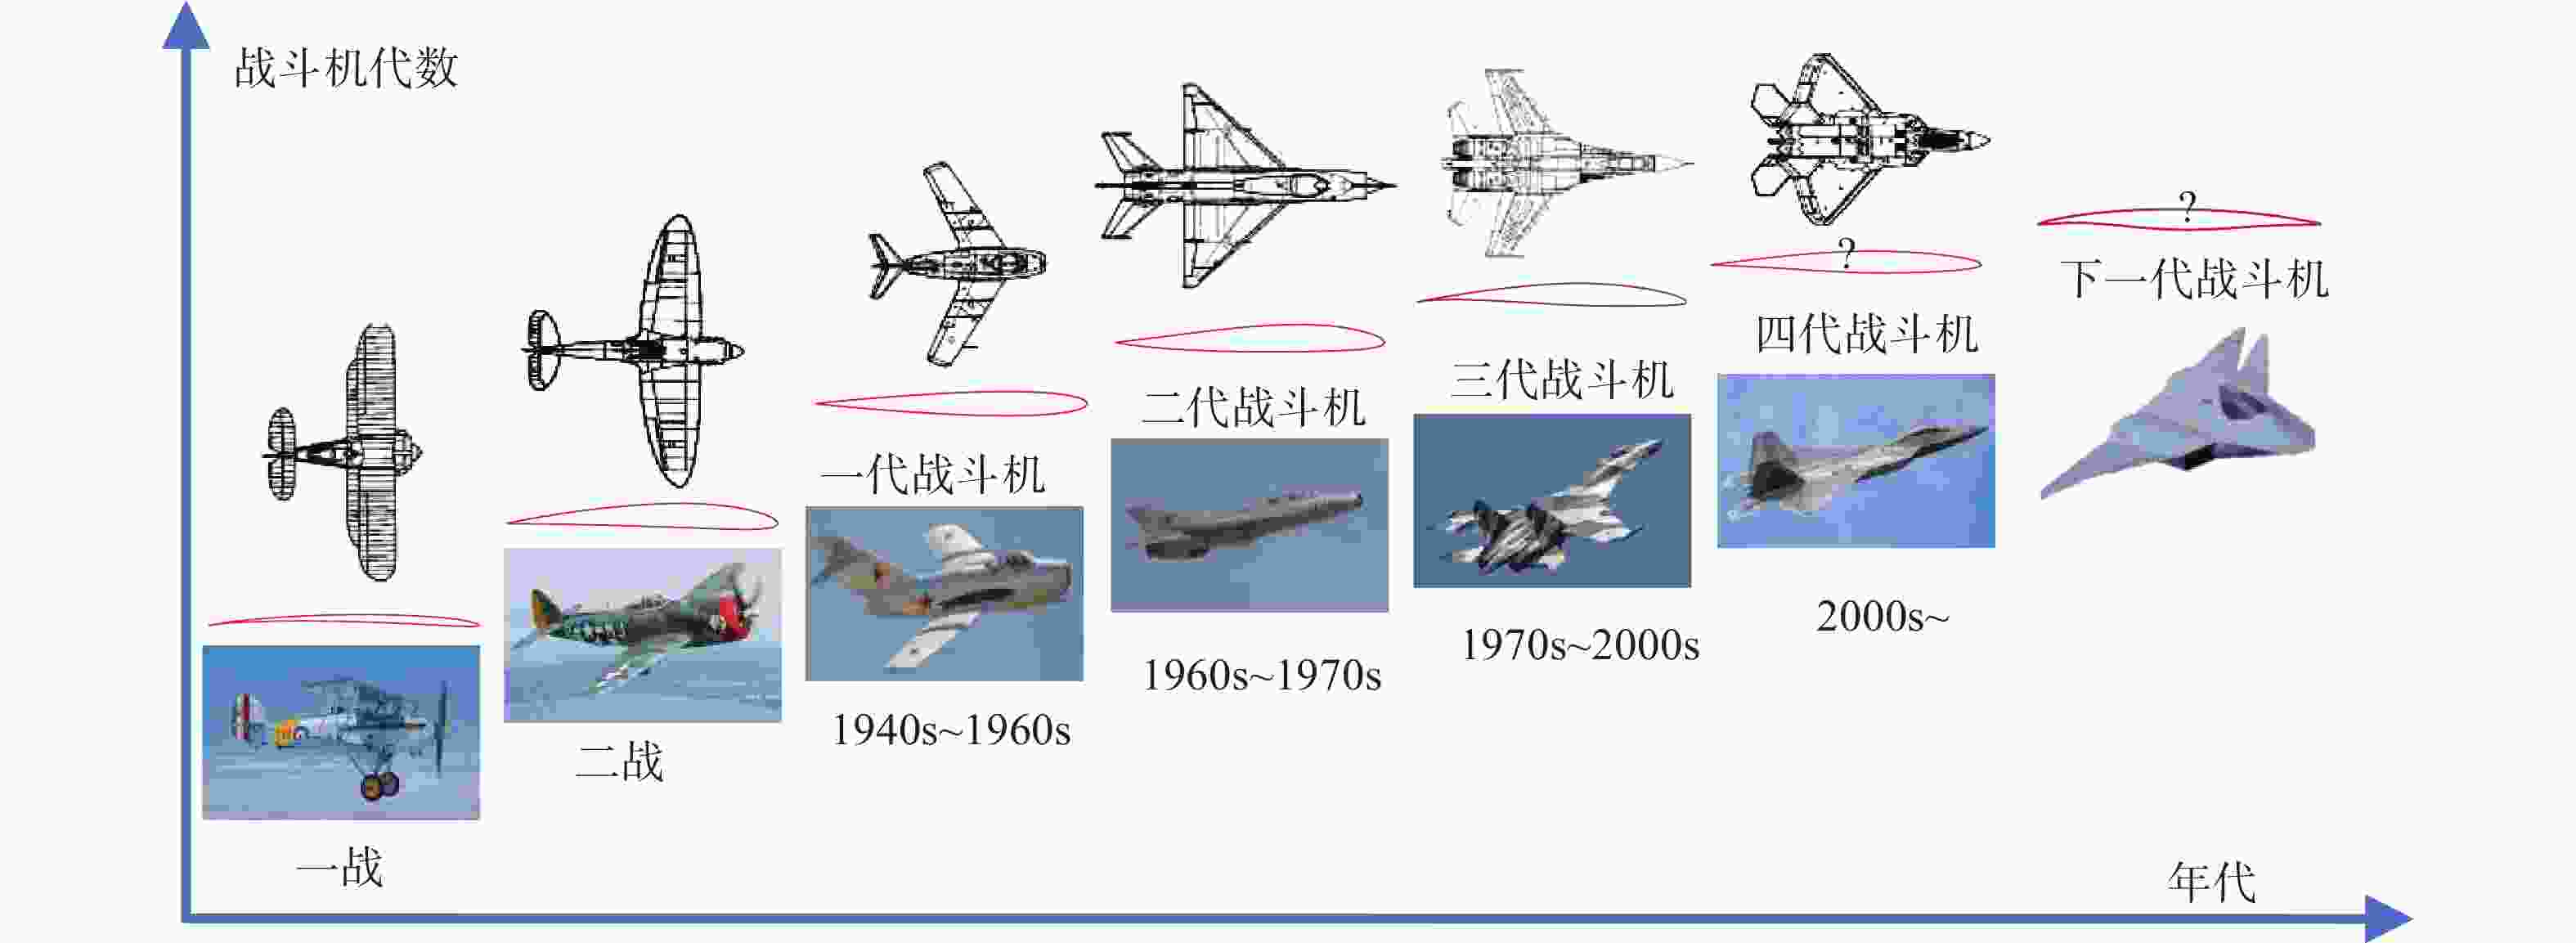 翼型研究的历史、现状与未来发展